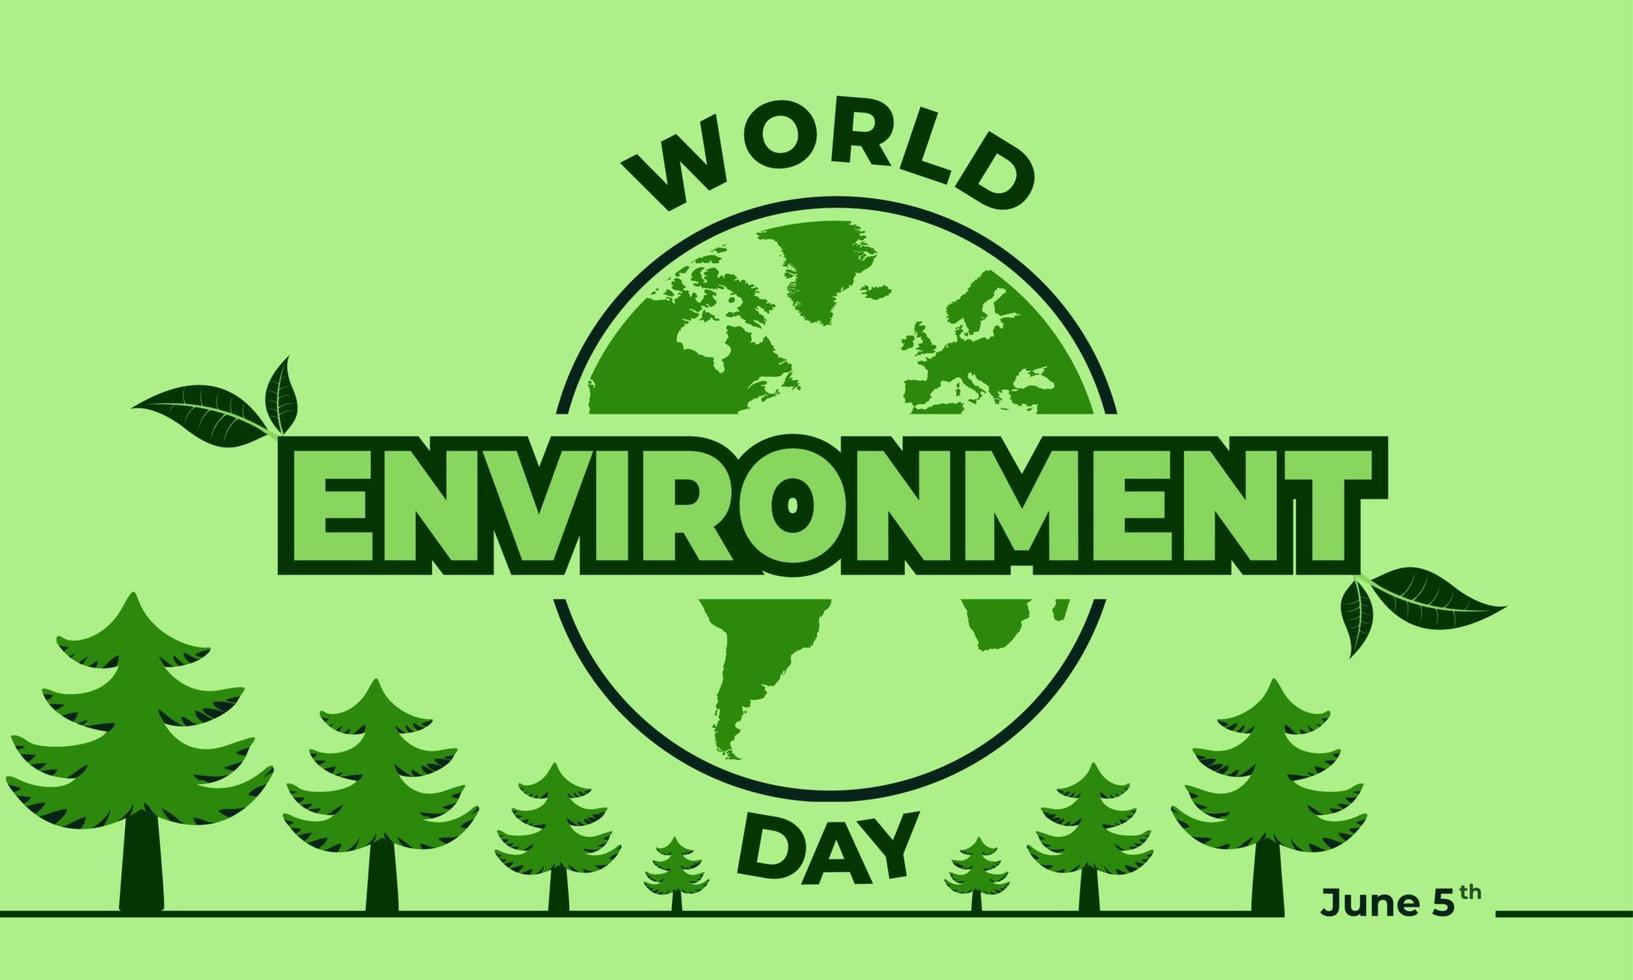 journée mondiale de l'environnement, conception de vecteur vert, illustration vectorielle et texte